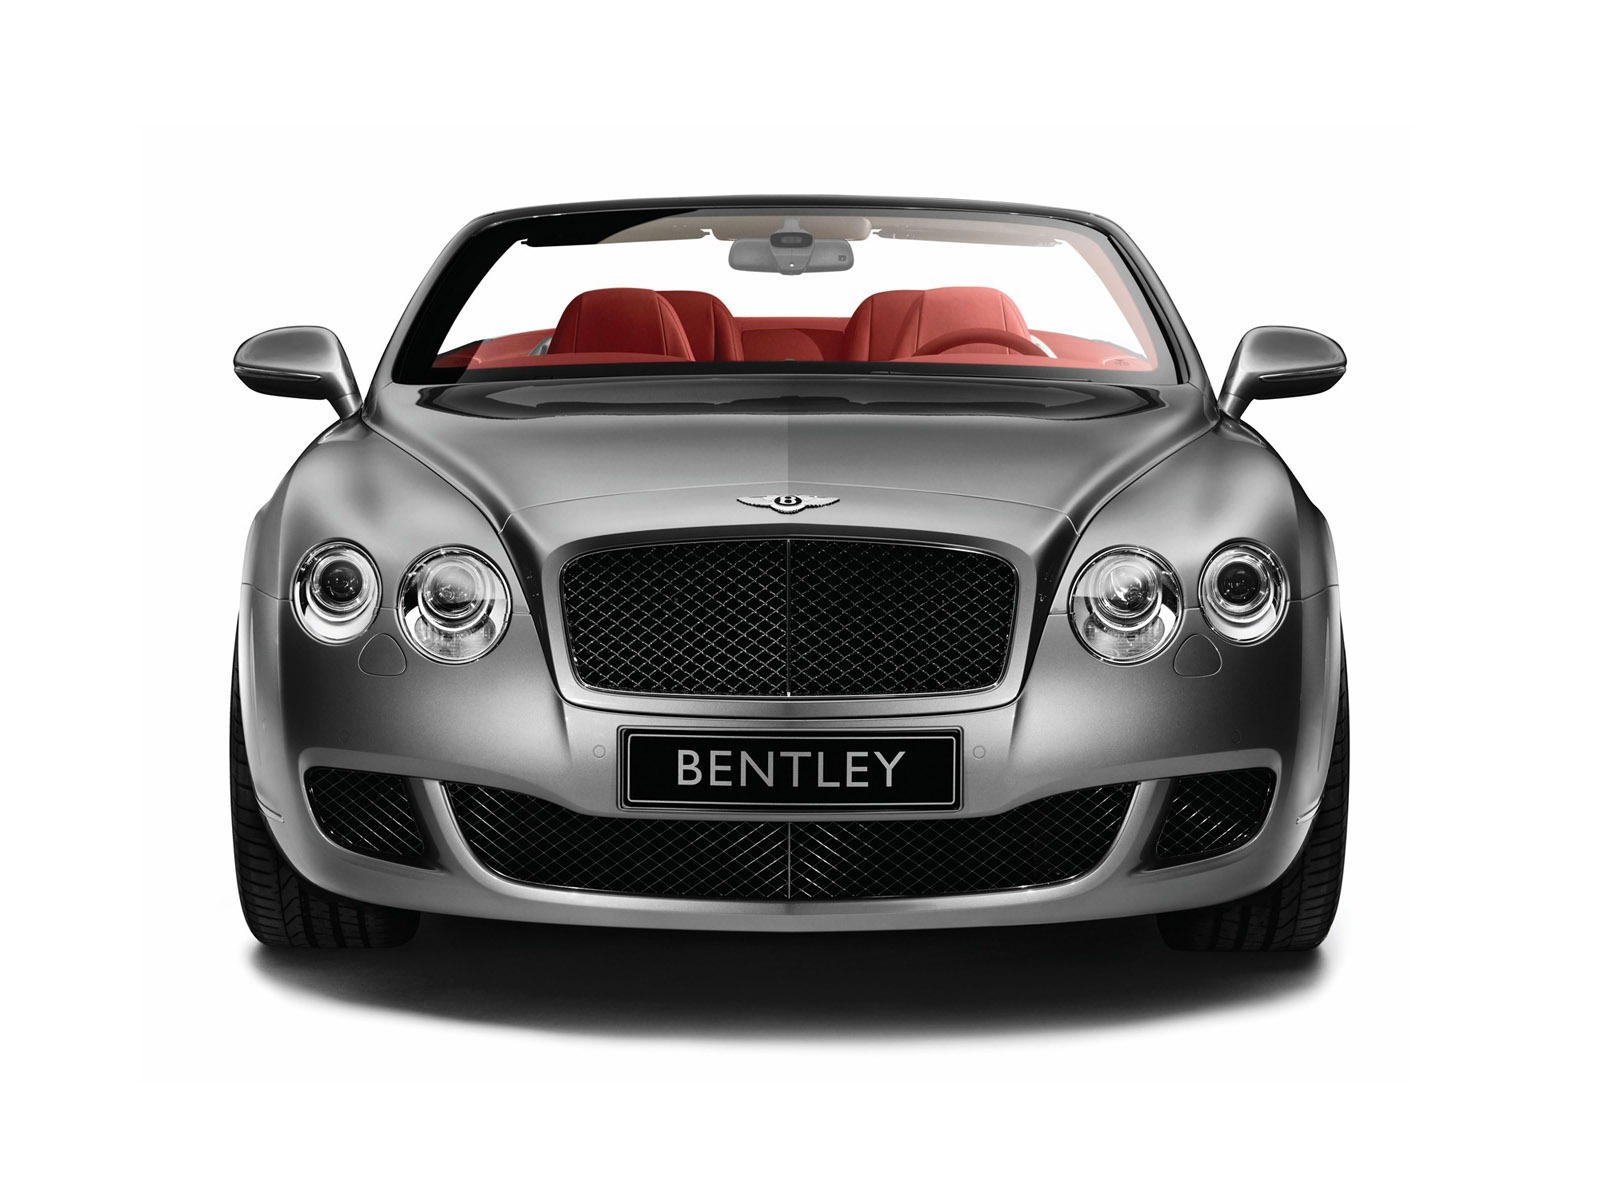 Bentley 宾利 壁纸专辑(一)20 - 1600x1200